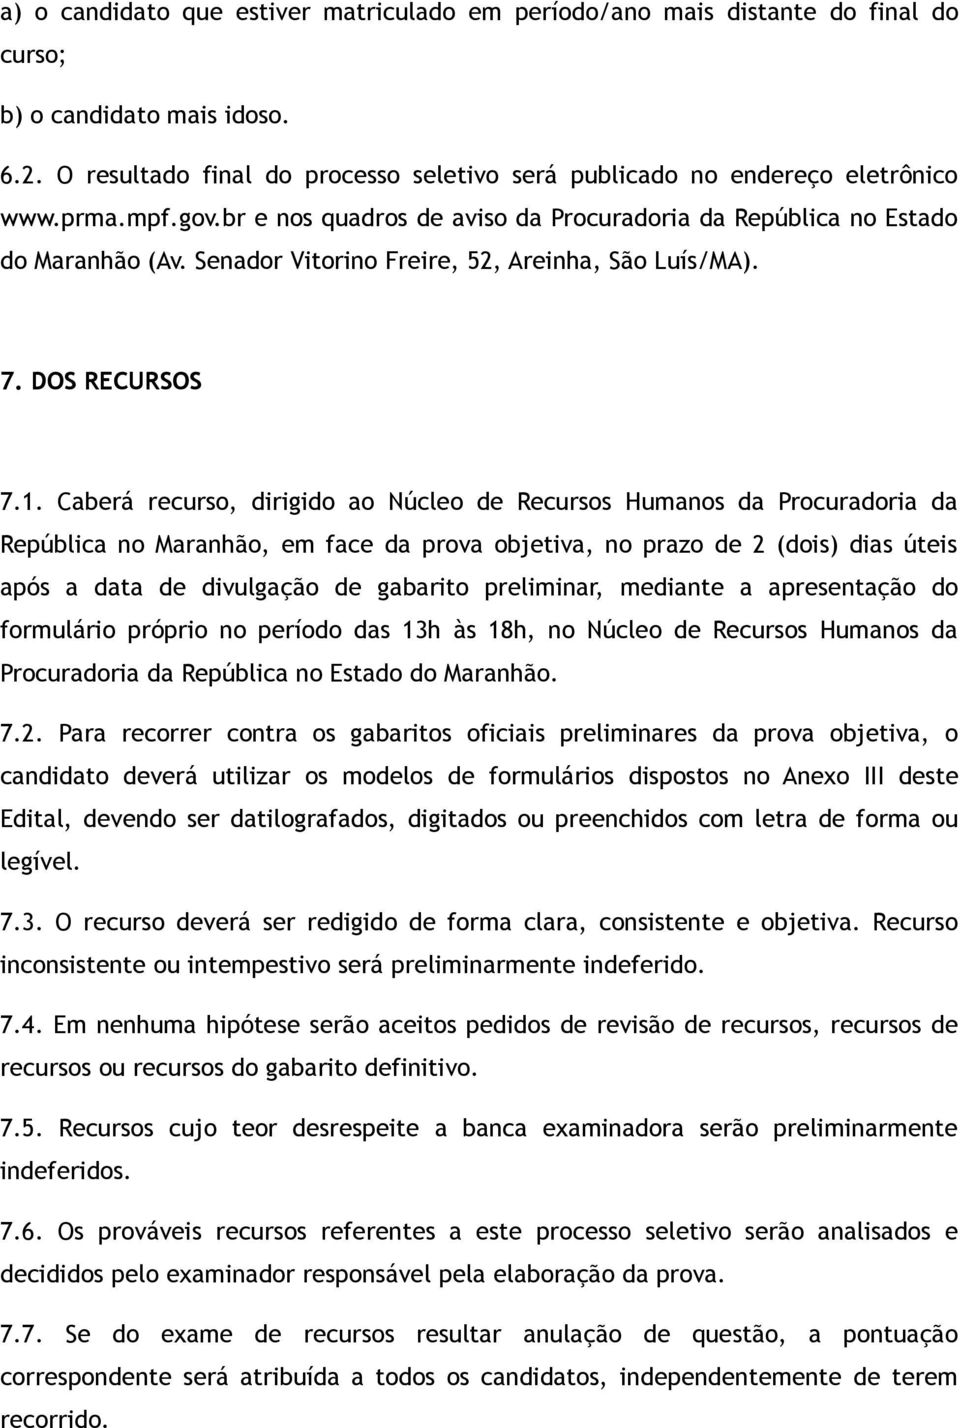 Caberá recurso, dirigido ao Núcleo de Recursos Humanos da Procuradoria da República no Maranhão, em face da prova objetiva, no prazo de 2 (dois) dias úteis após a data de divulgação de gabarito